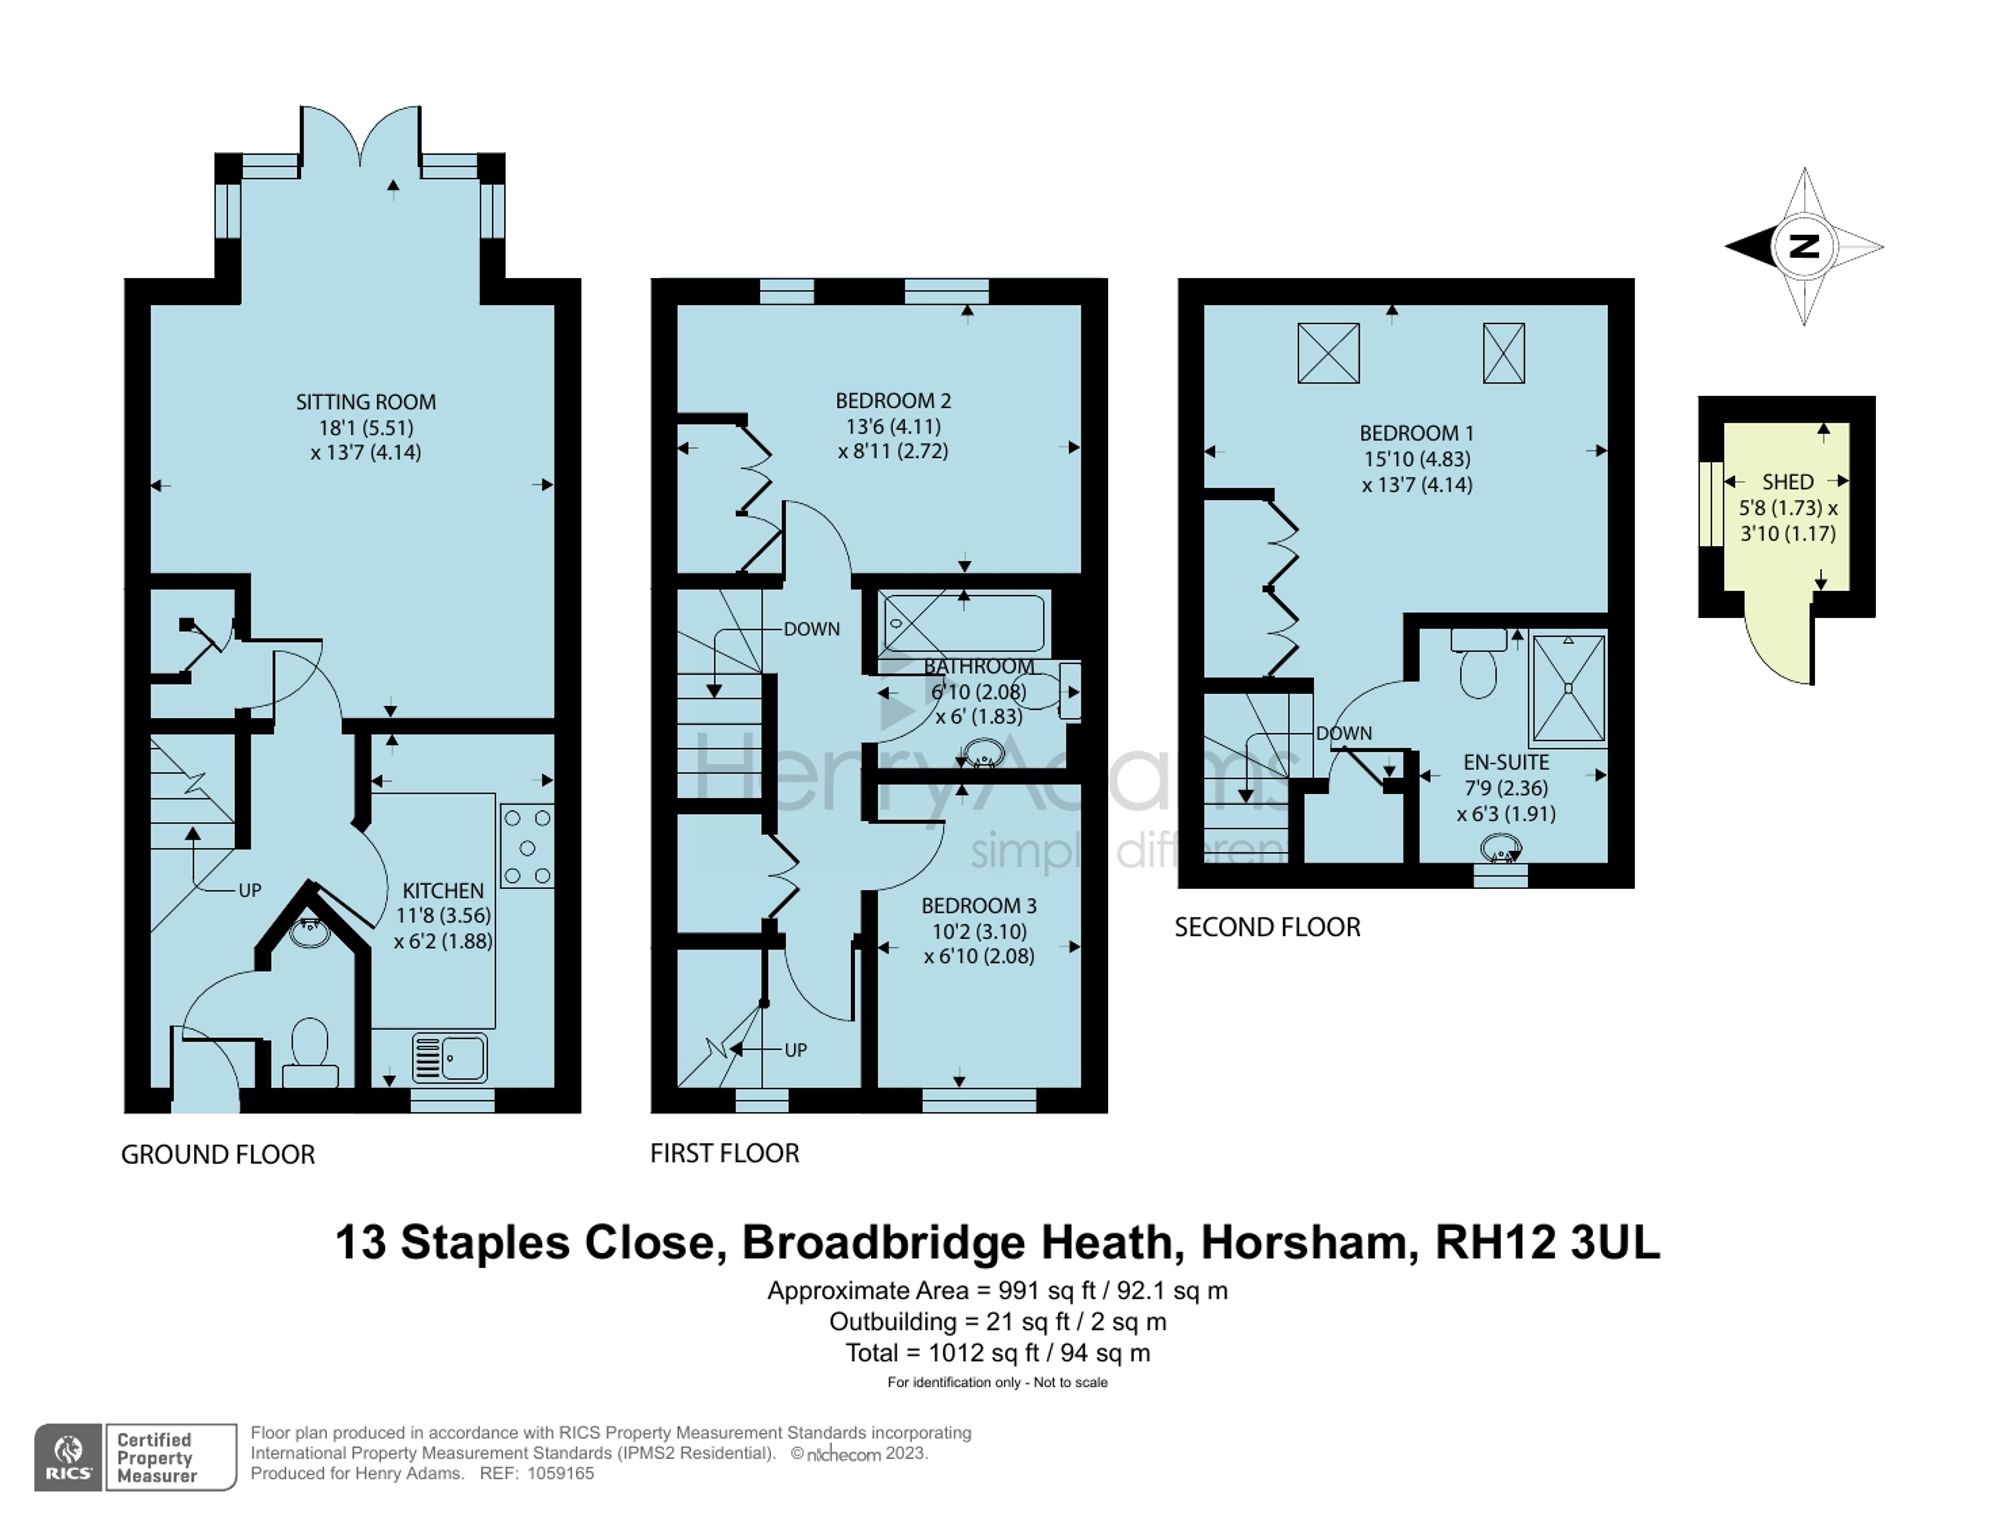 Staples Close, Broadbridge Heath, RH12 floorplans